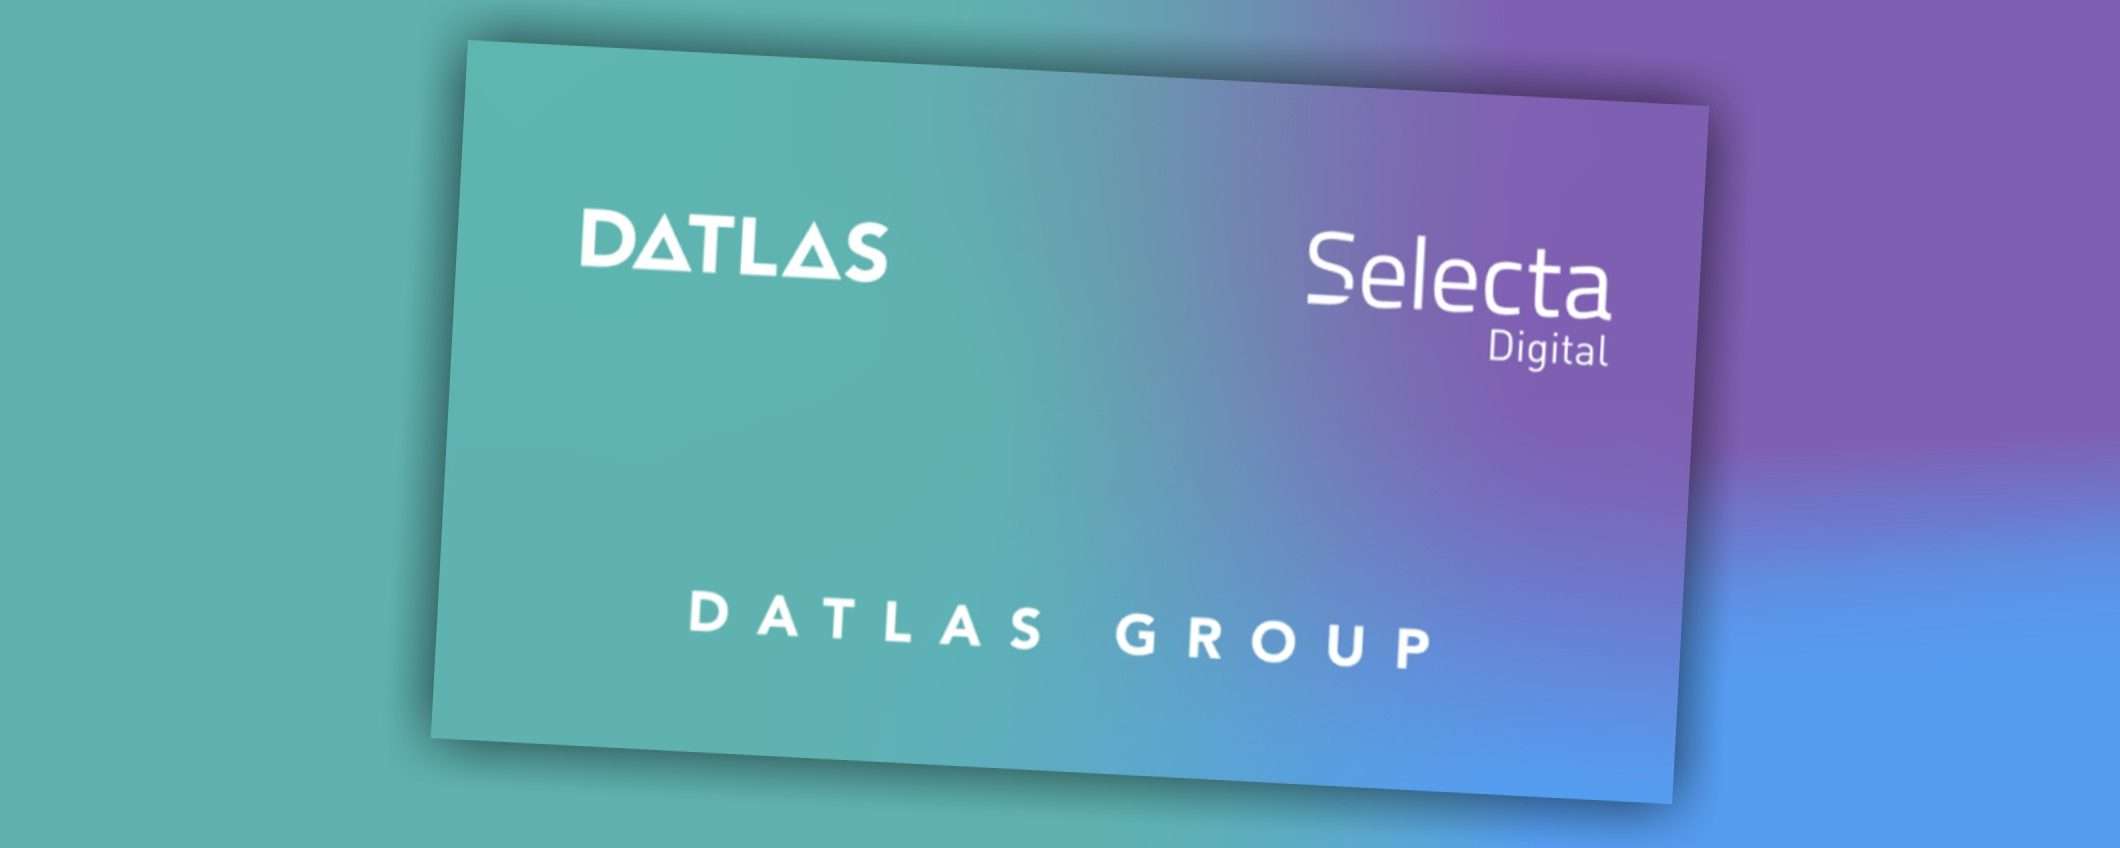 Datlas Group: la scommessa sull'economia circolare applicata al dato